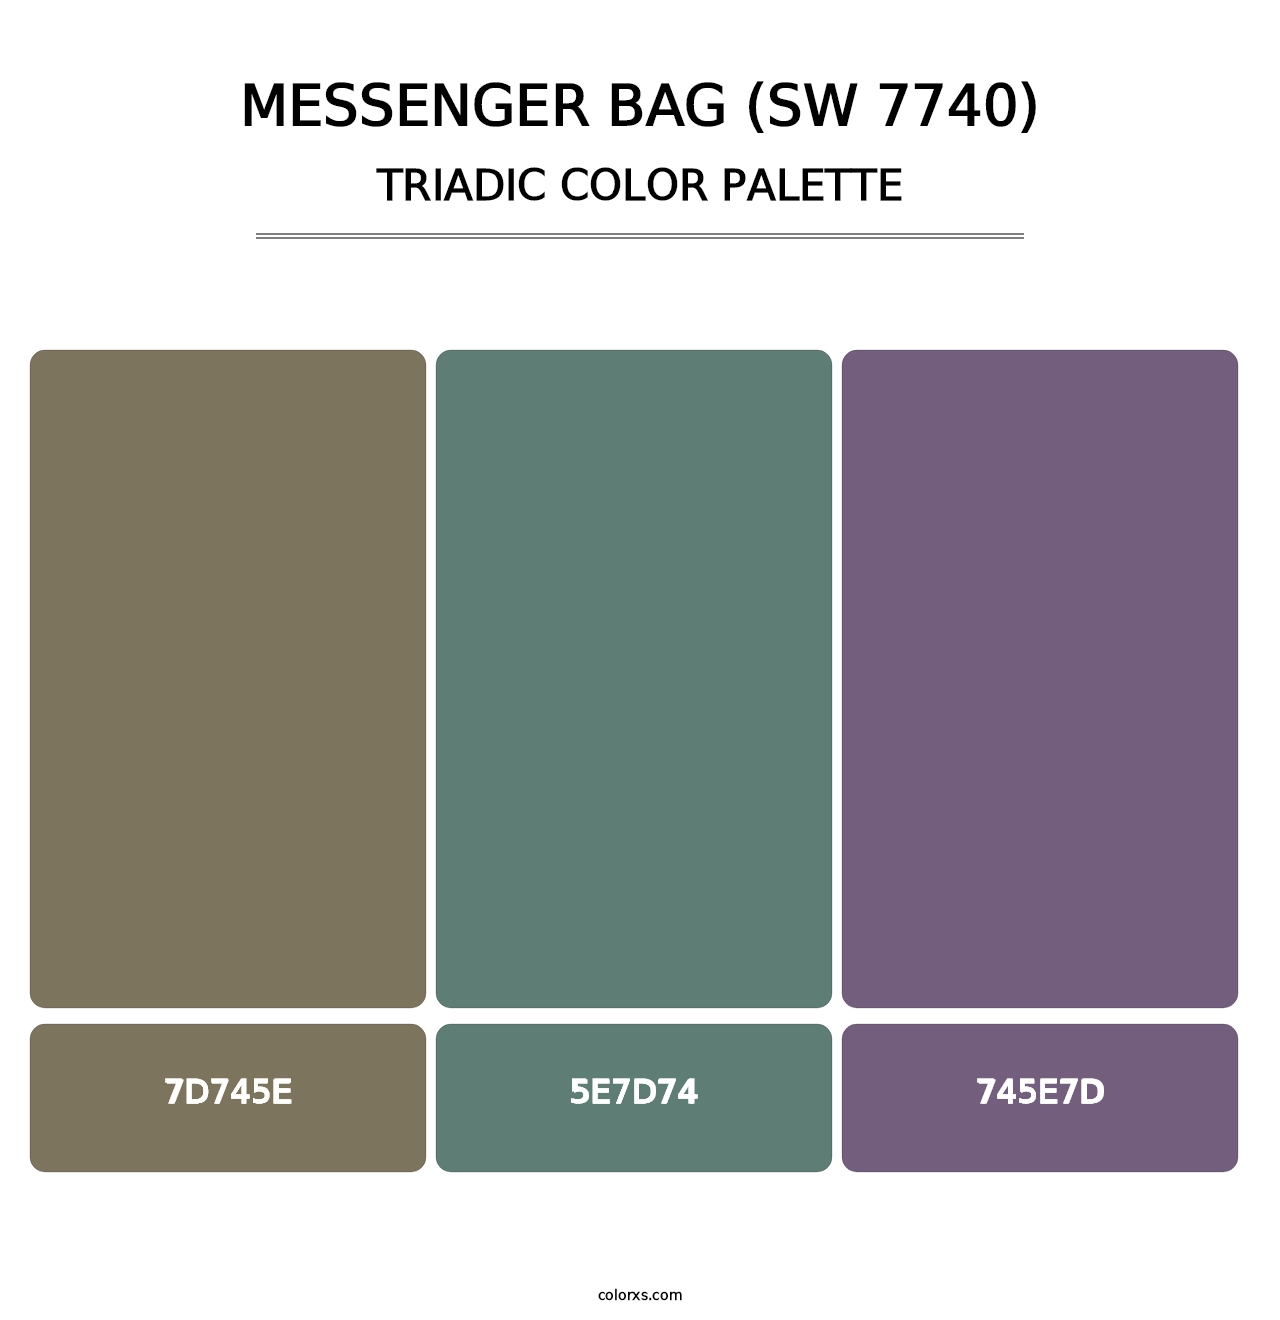 Messenger Bag (SW 7740) - Triadic Color Palette